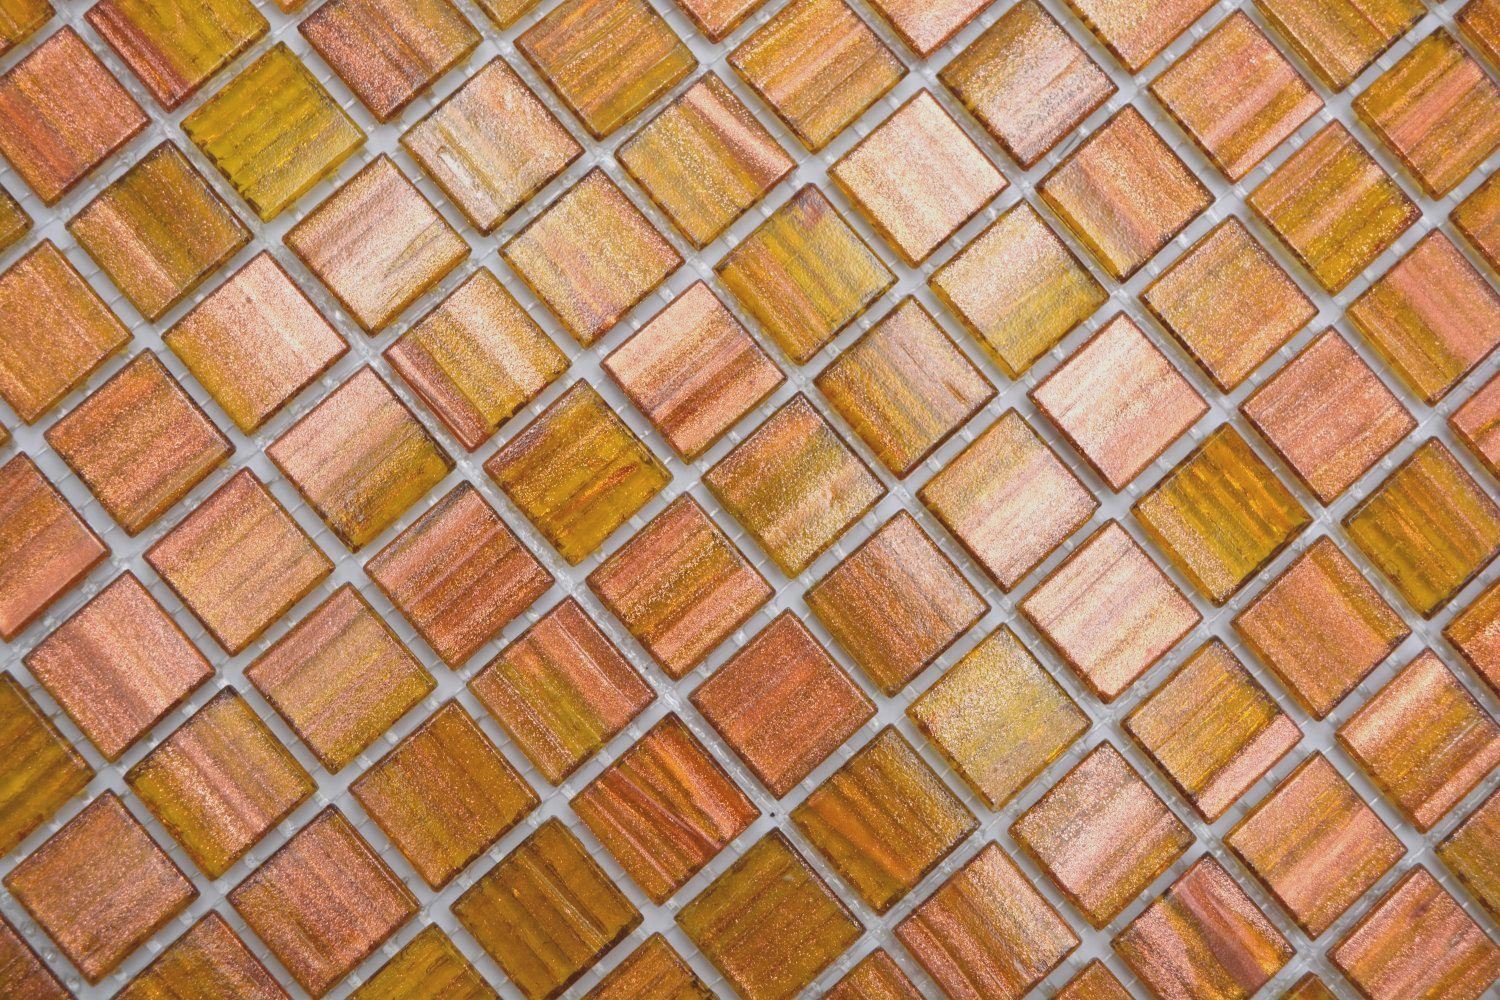 Mosani Mosaikfliesen Mosaikfliesen Glasmosaik hellbraun glänzend Quadratisches